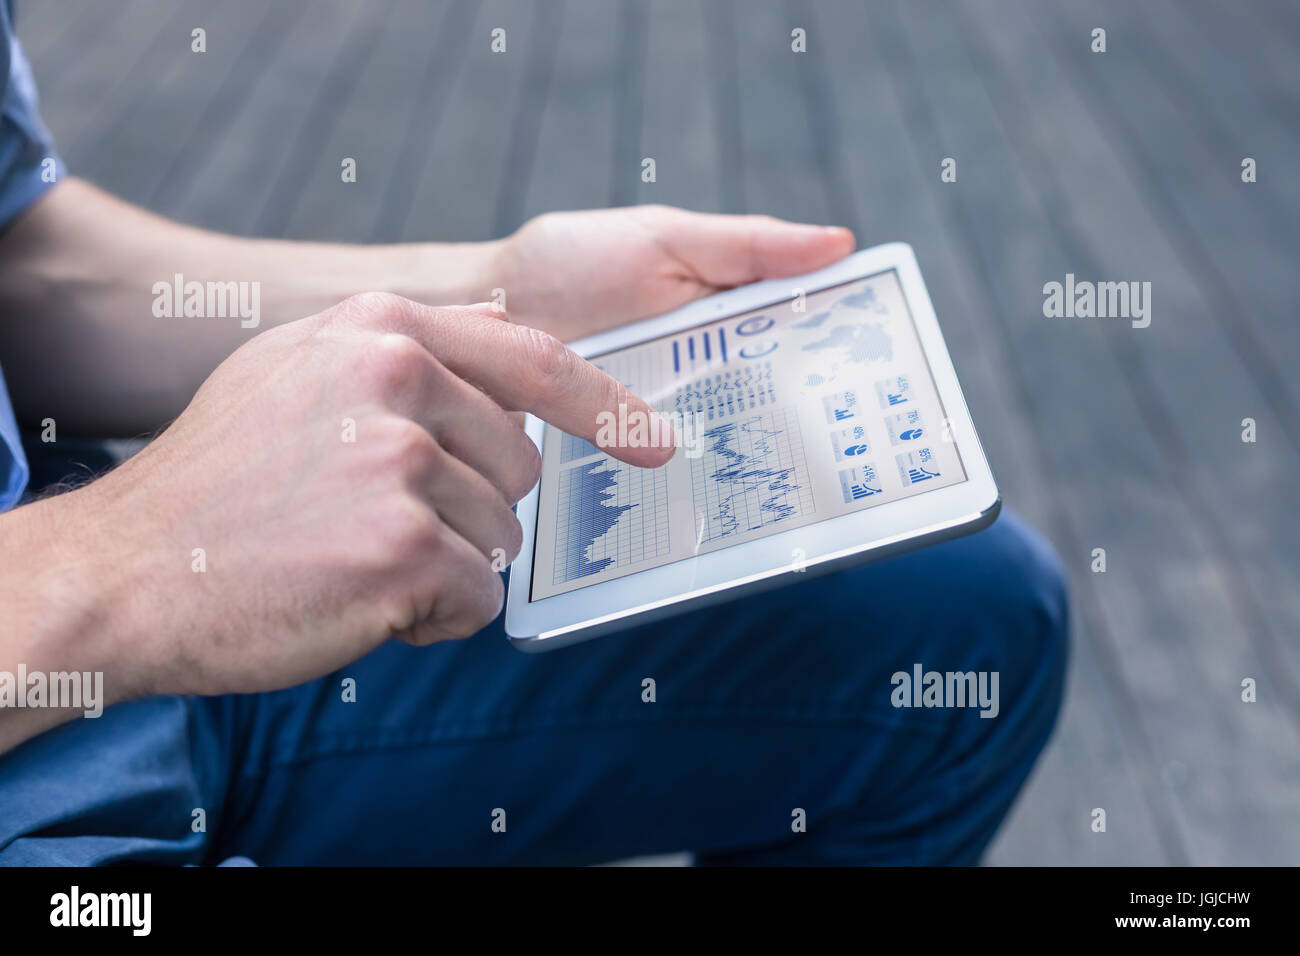 Lässige Person mit digitalen Tablet-Computer zu einem finanziellen Dashboard mit Diagrammen und Key Performance Indicators (KPI) für Börse assoz analysieren Stockfoto